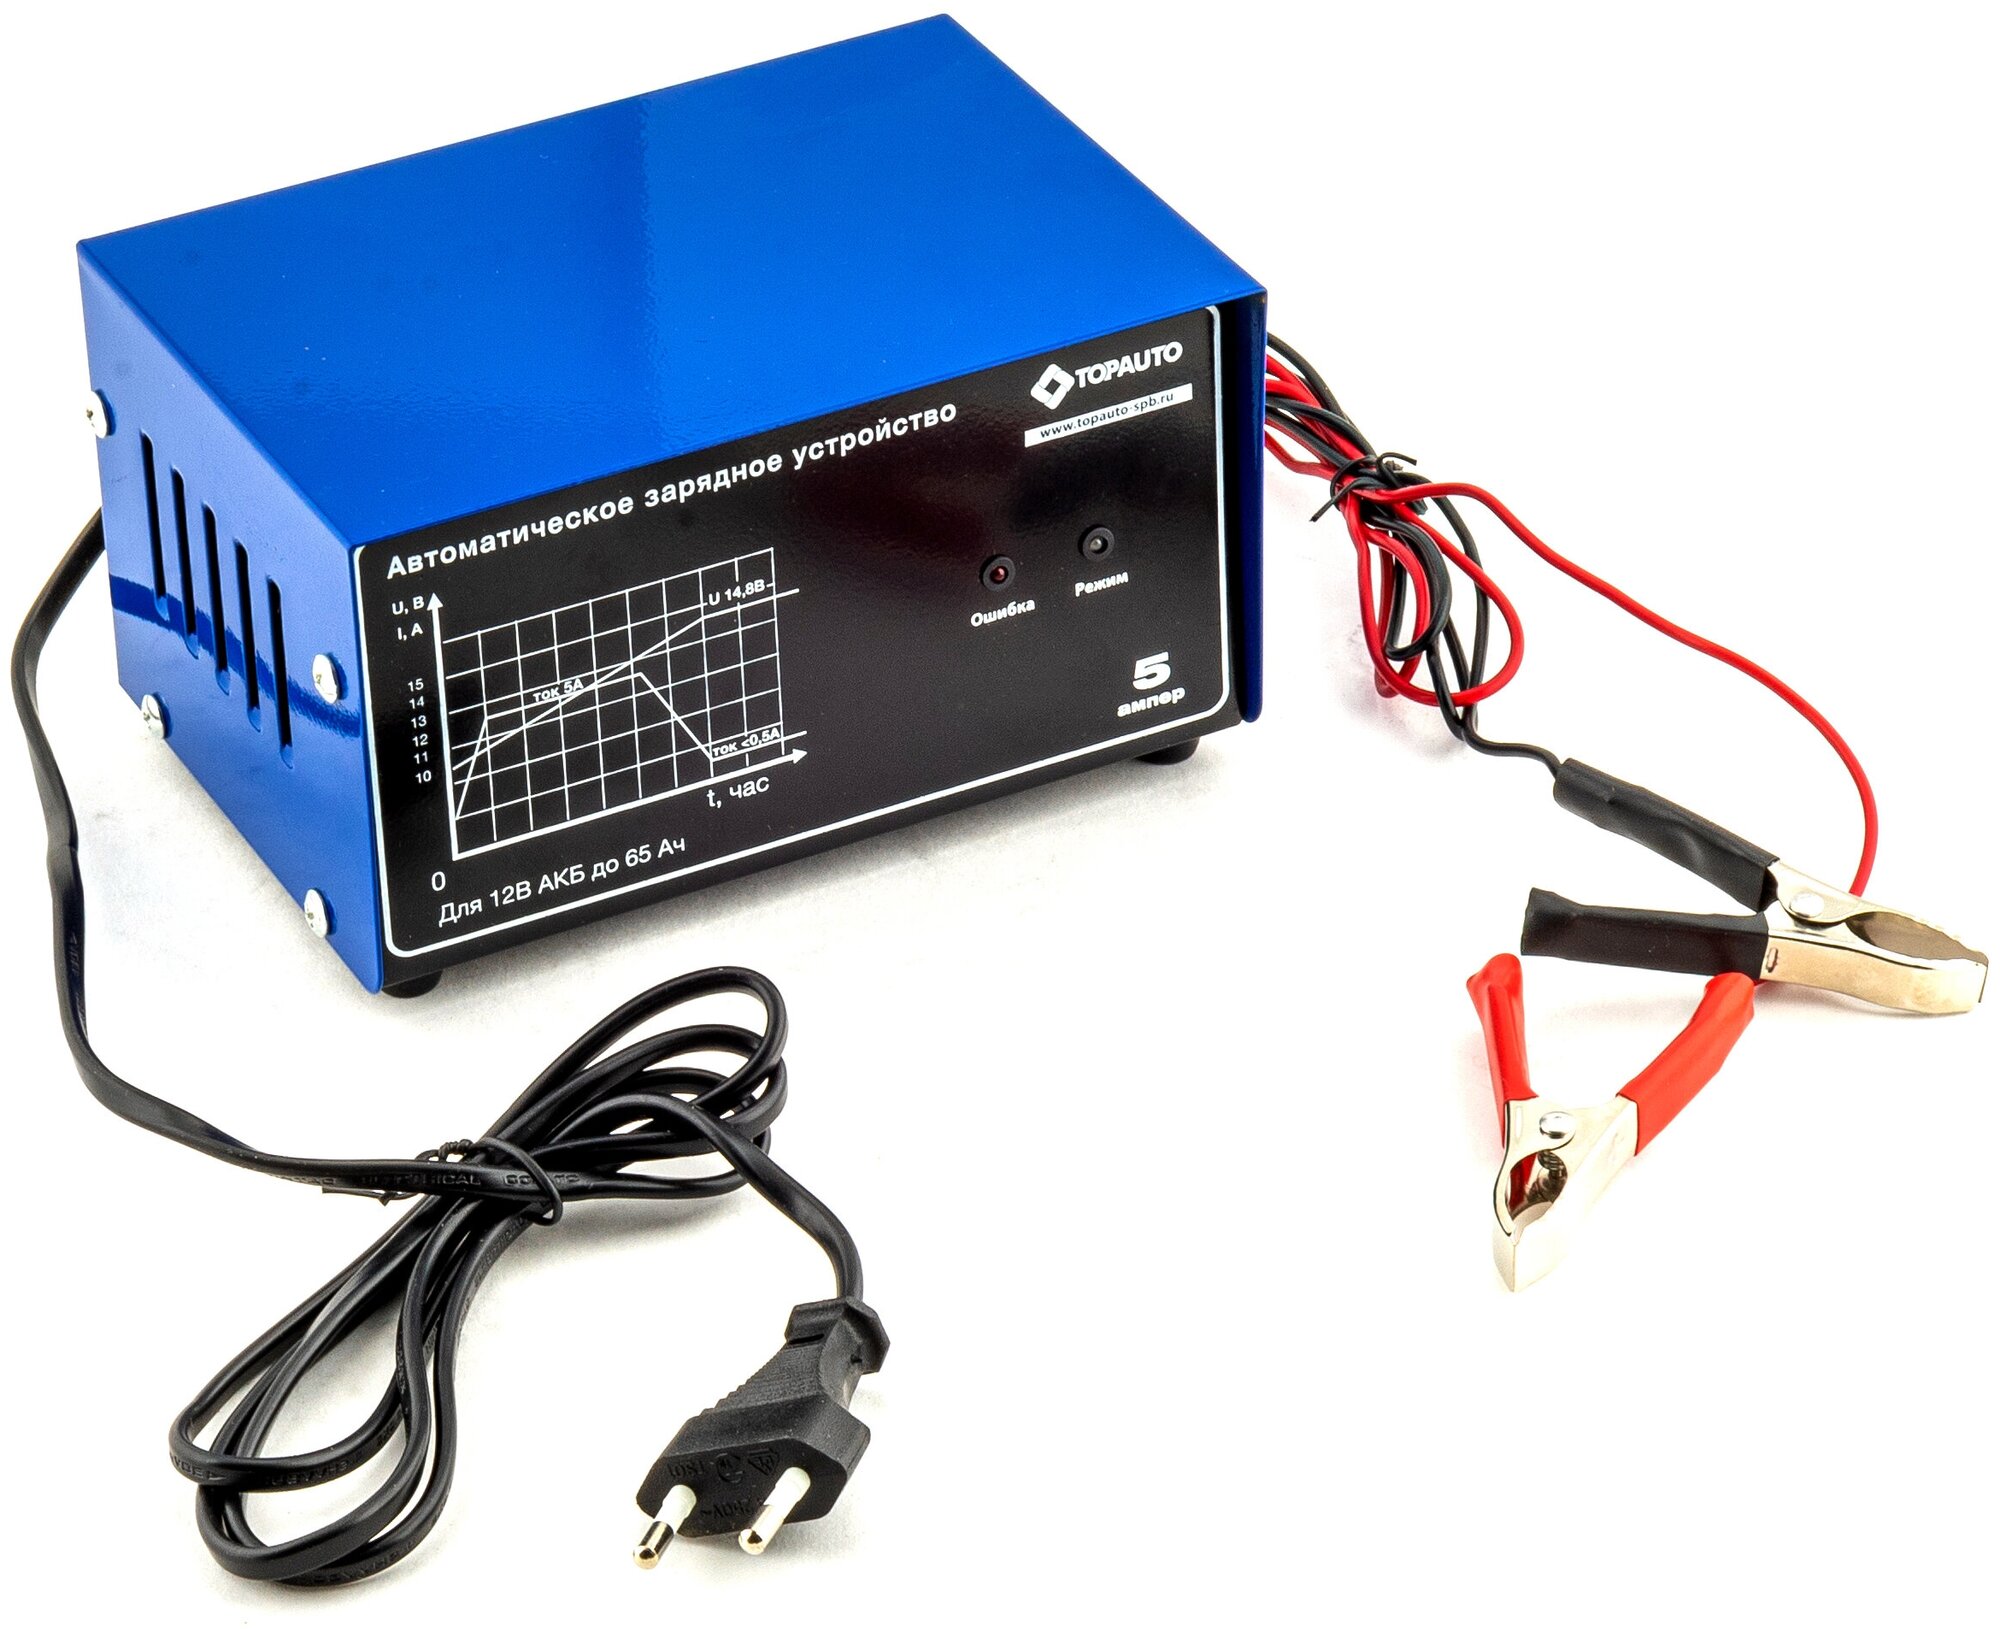 Автоматическое зарядное устройство ТОП авто 5А (6/12В 0,5-5А Для АКБ до 65 А/ч), НА5